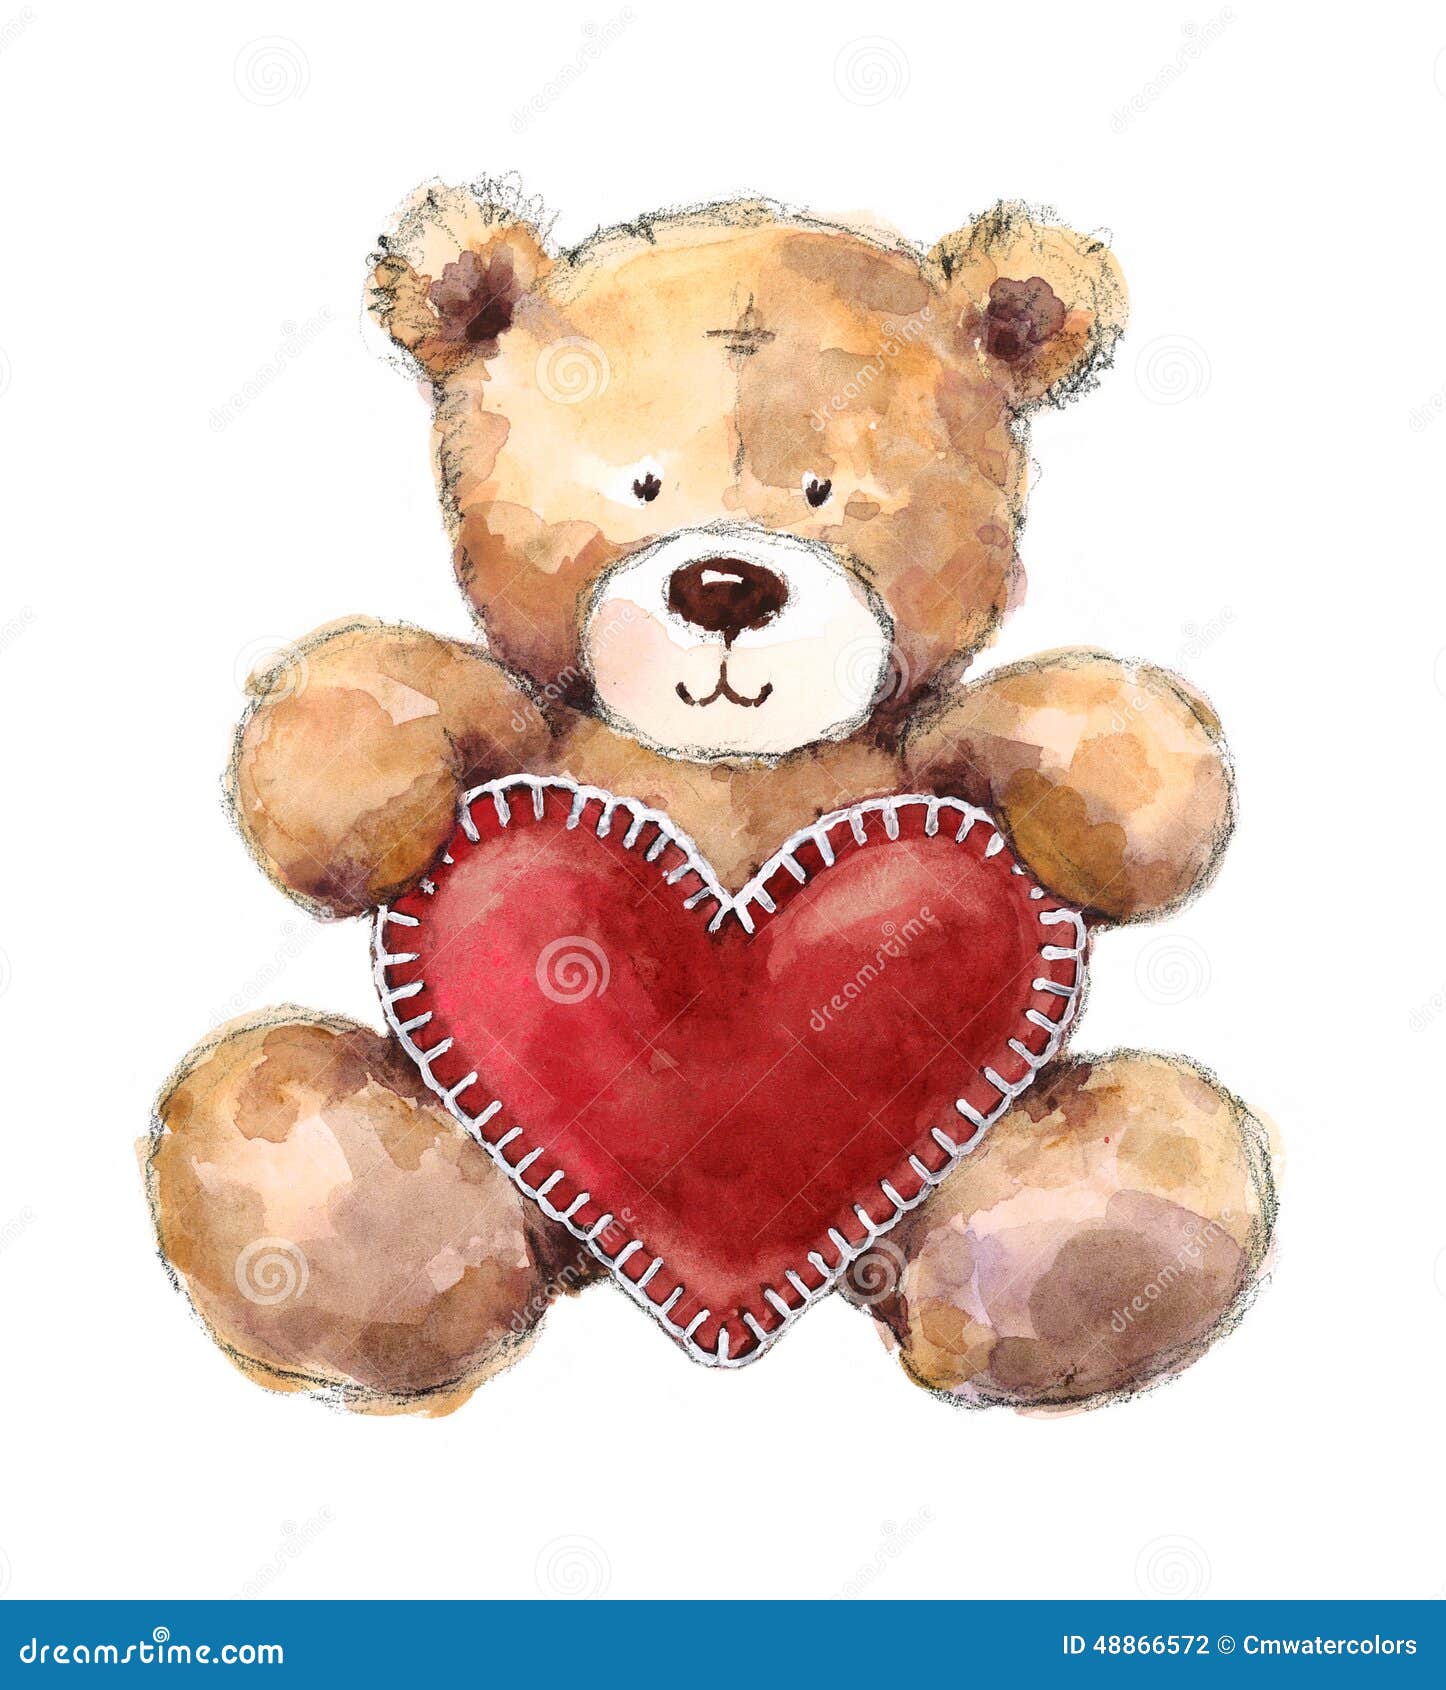 teddy bear holding heart clipart - photo #35